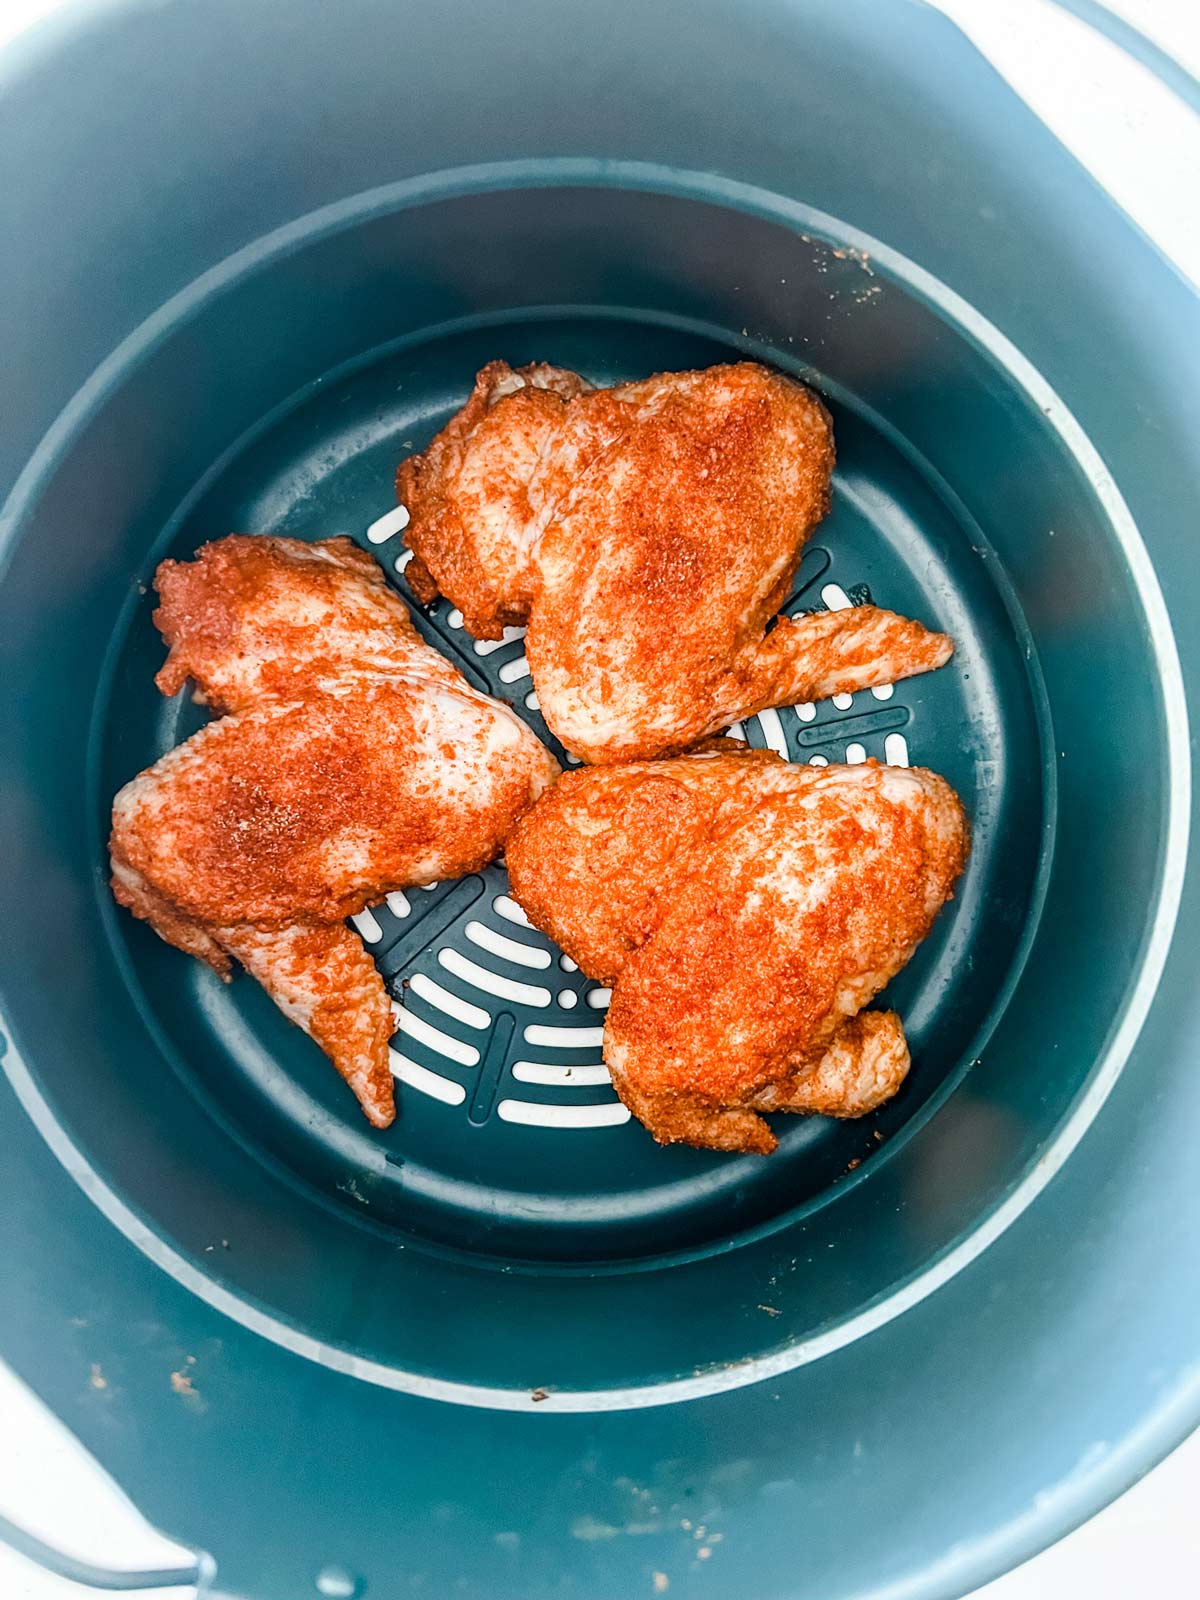 Seasoninged chicken wings in the air fryer basket of a Ninja Foodi.